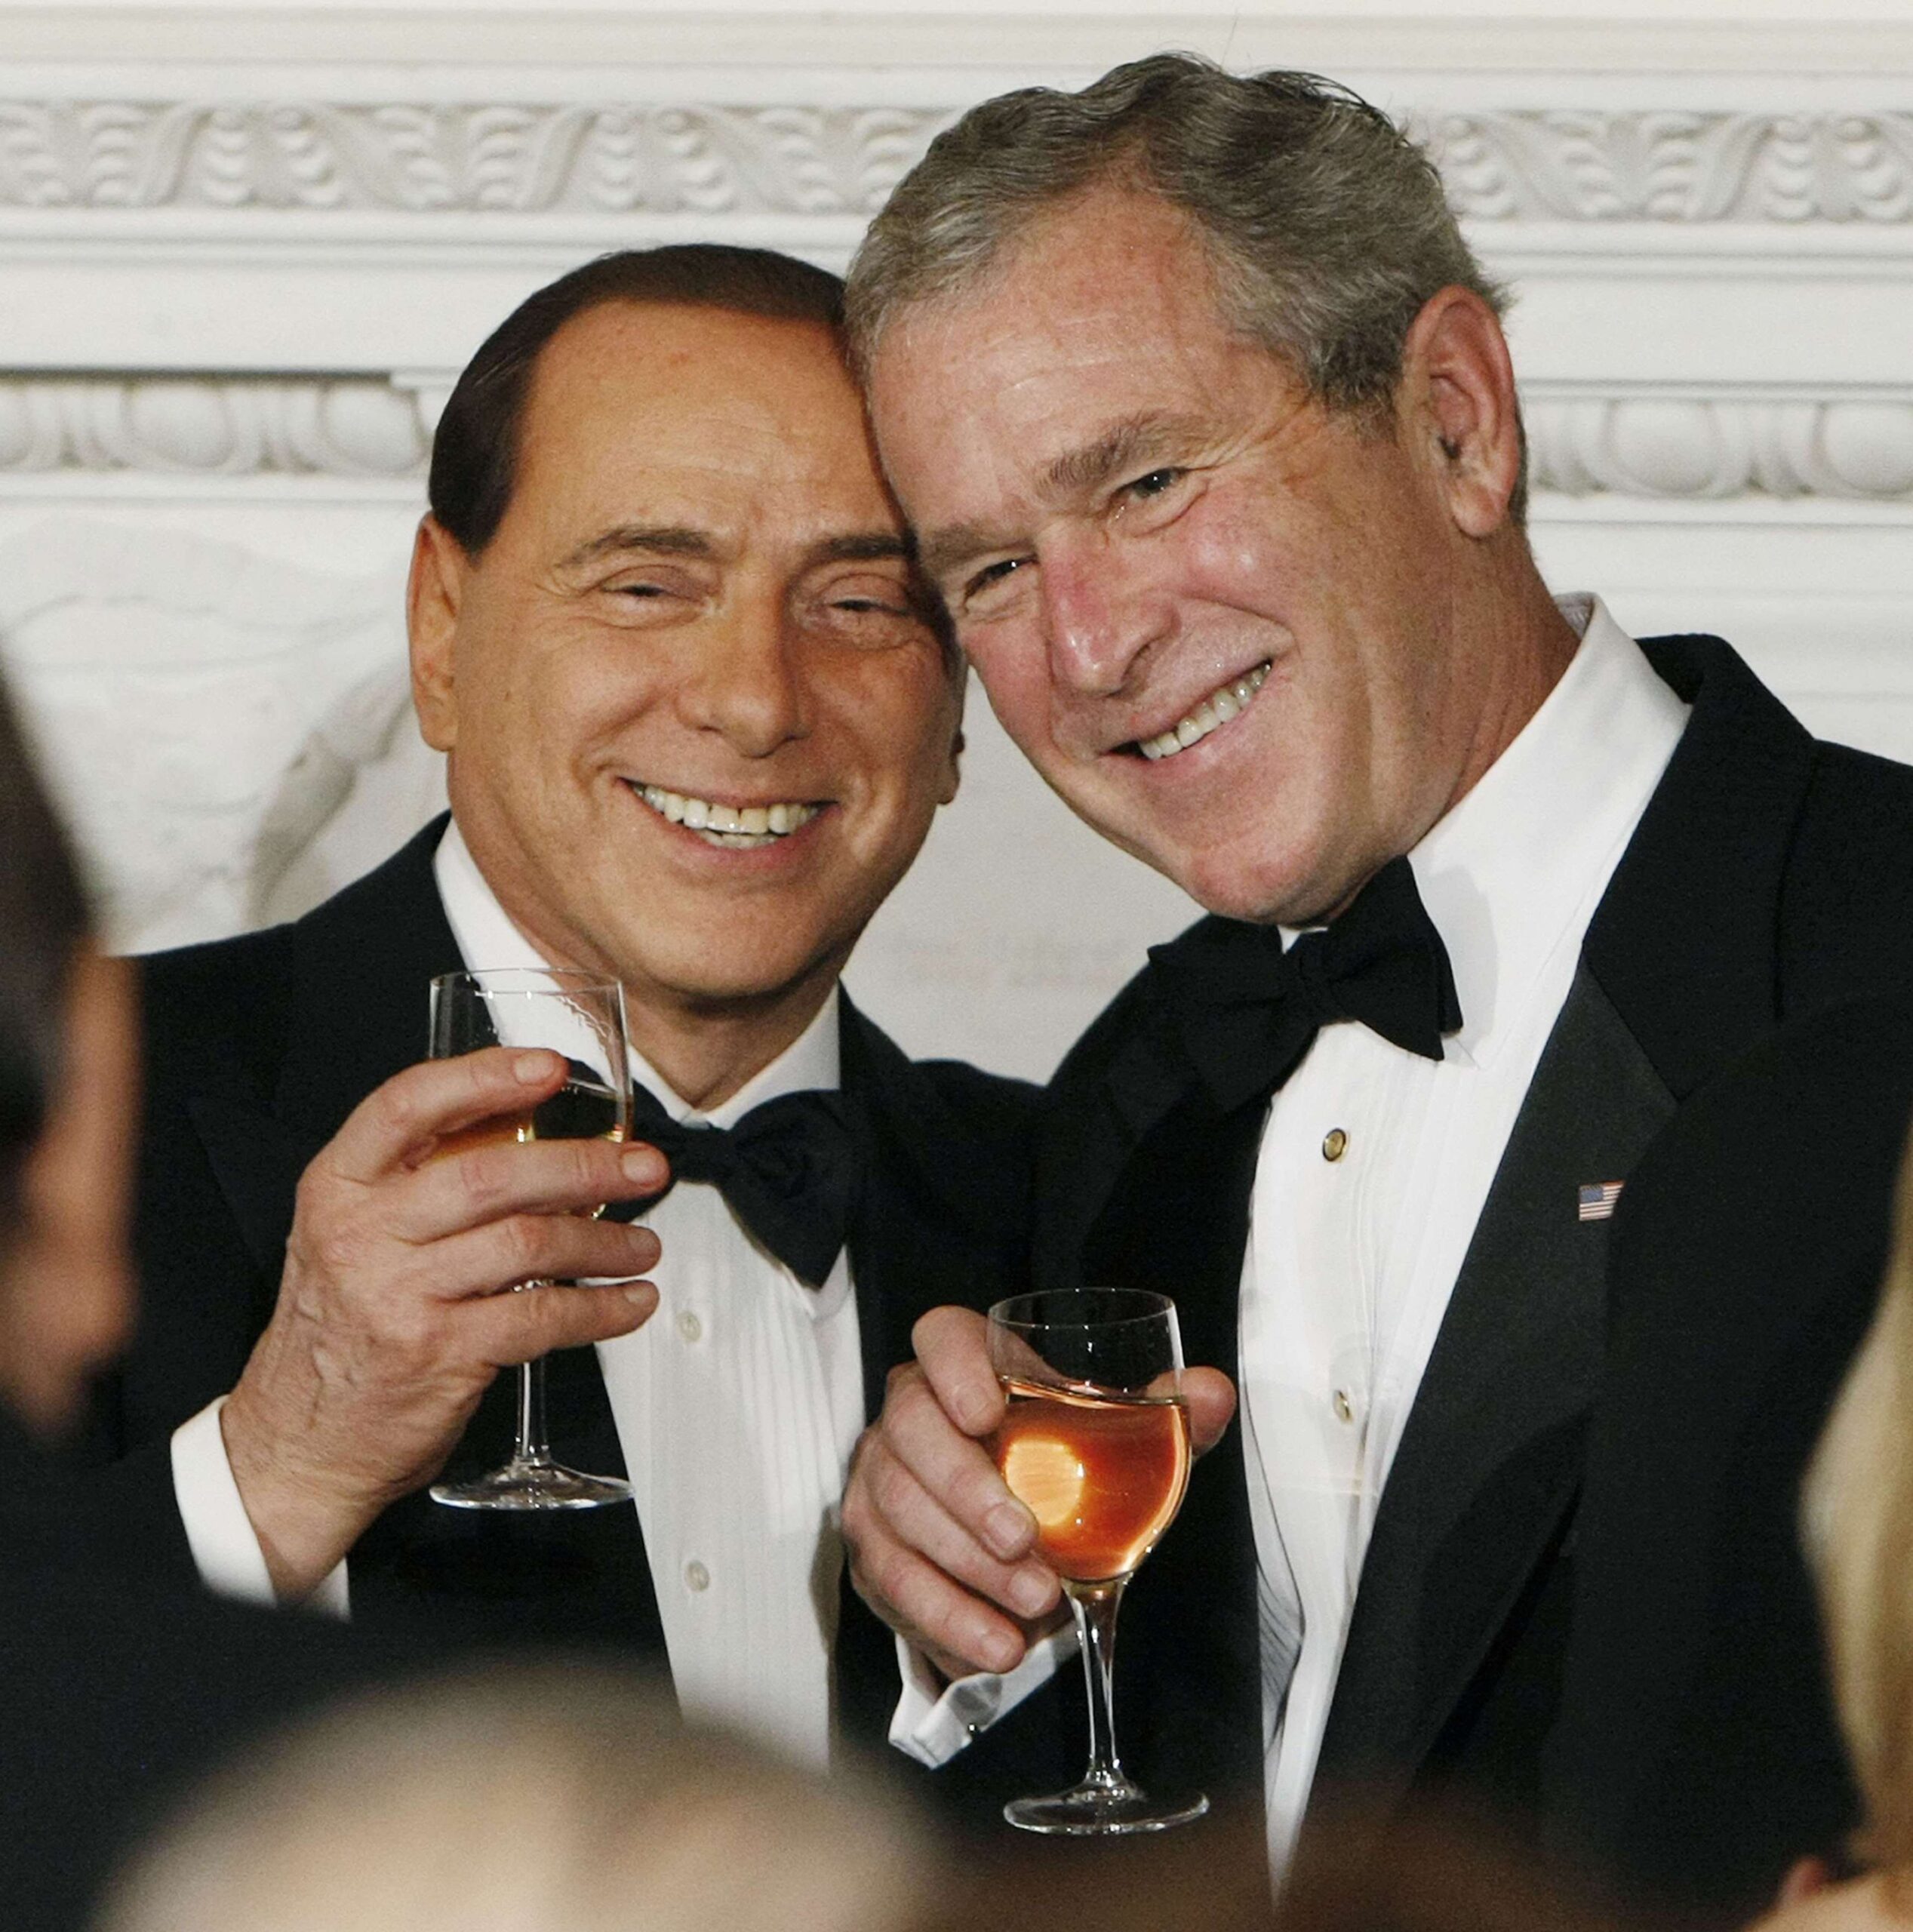 Lundi 13 octobre 2008 - le président George Bush, à droite, porte un toast avec le premier ministre italien Silvio Berlusconi lors d'un dîner officiel dans la salle à manger de l'État à Washington. © Pablo Martinez Monsivais/AP/SIPA